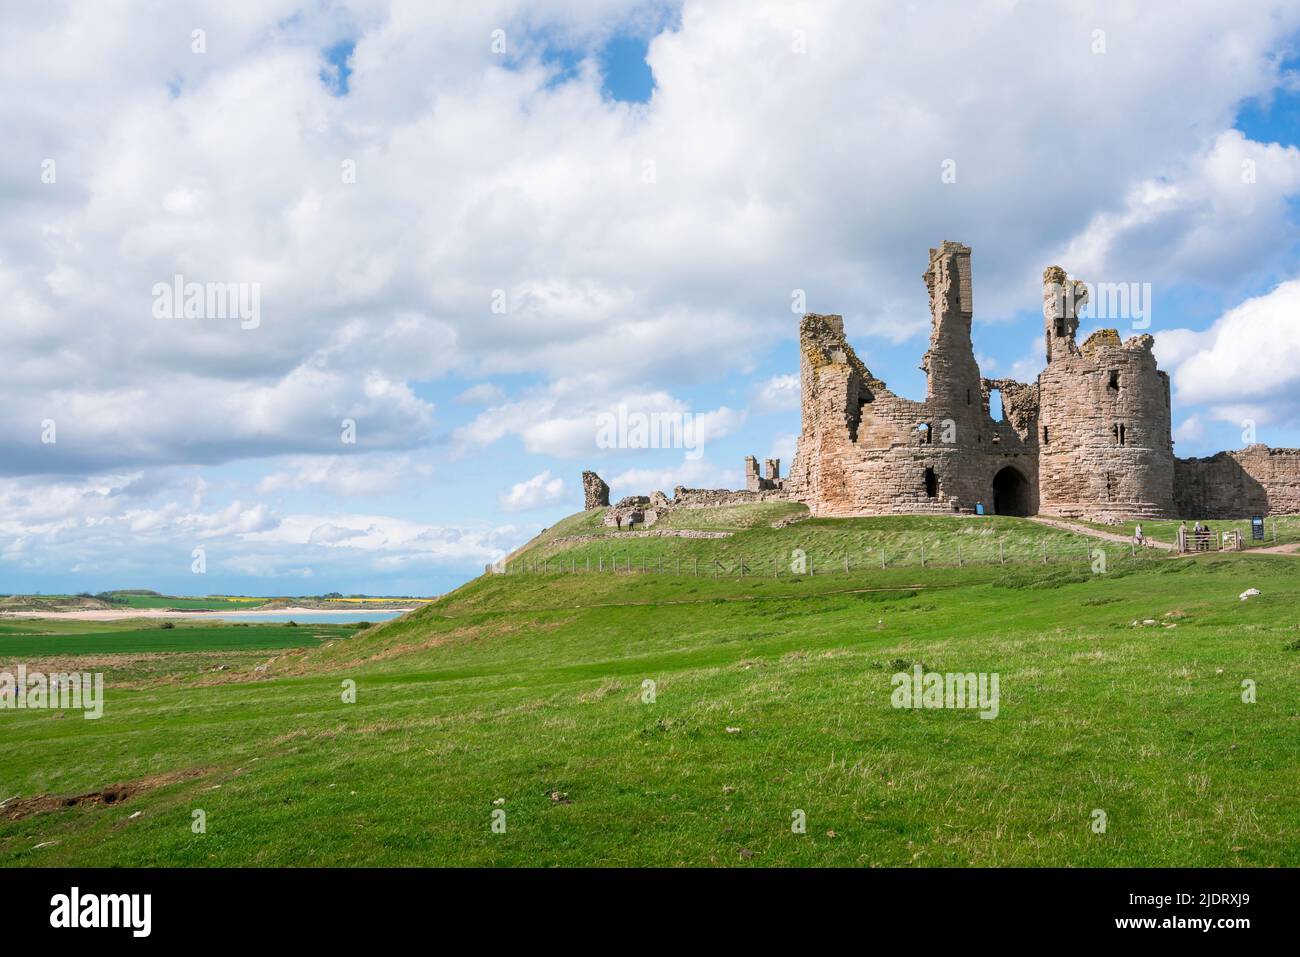 Castello rovine UK, vista del castello di Dunstanburgh 14th secolo in rovina, situato sulla costa Northumberland vicino a Embleton Bay, Inghilterra Foto Stock